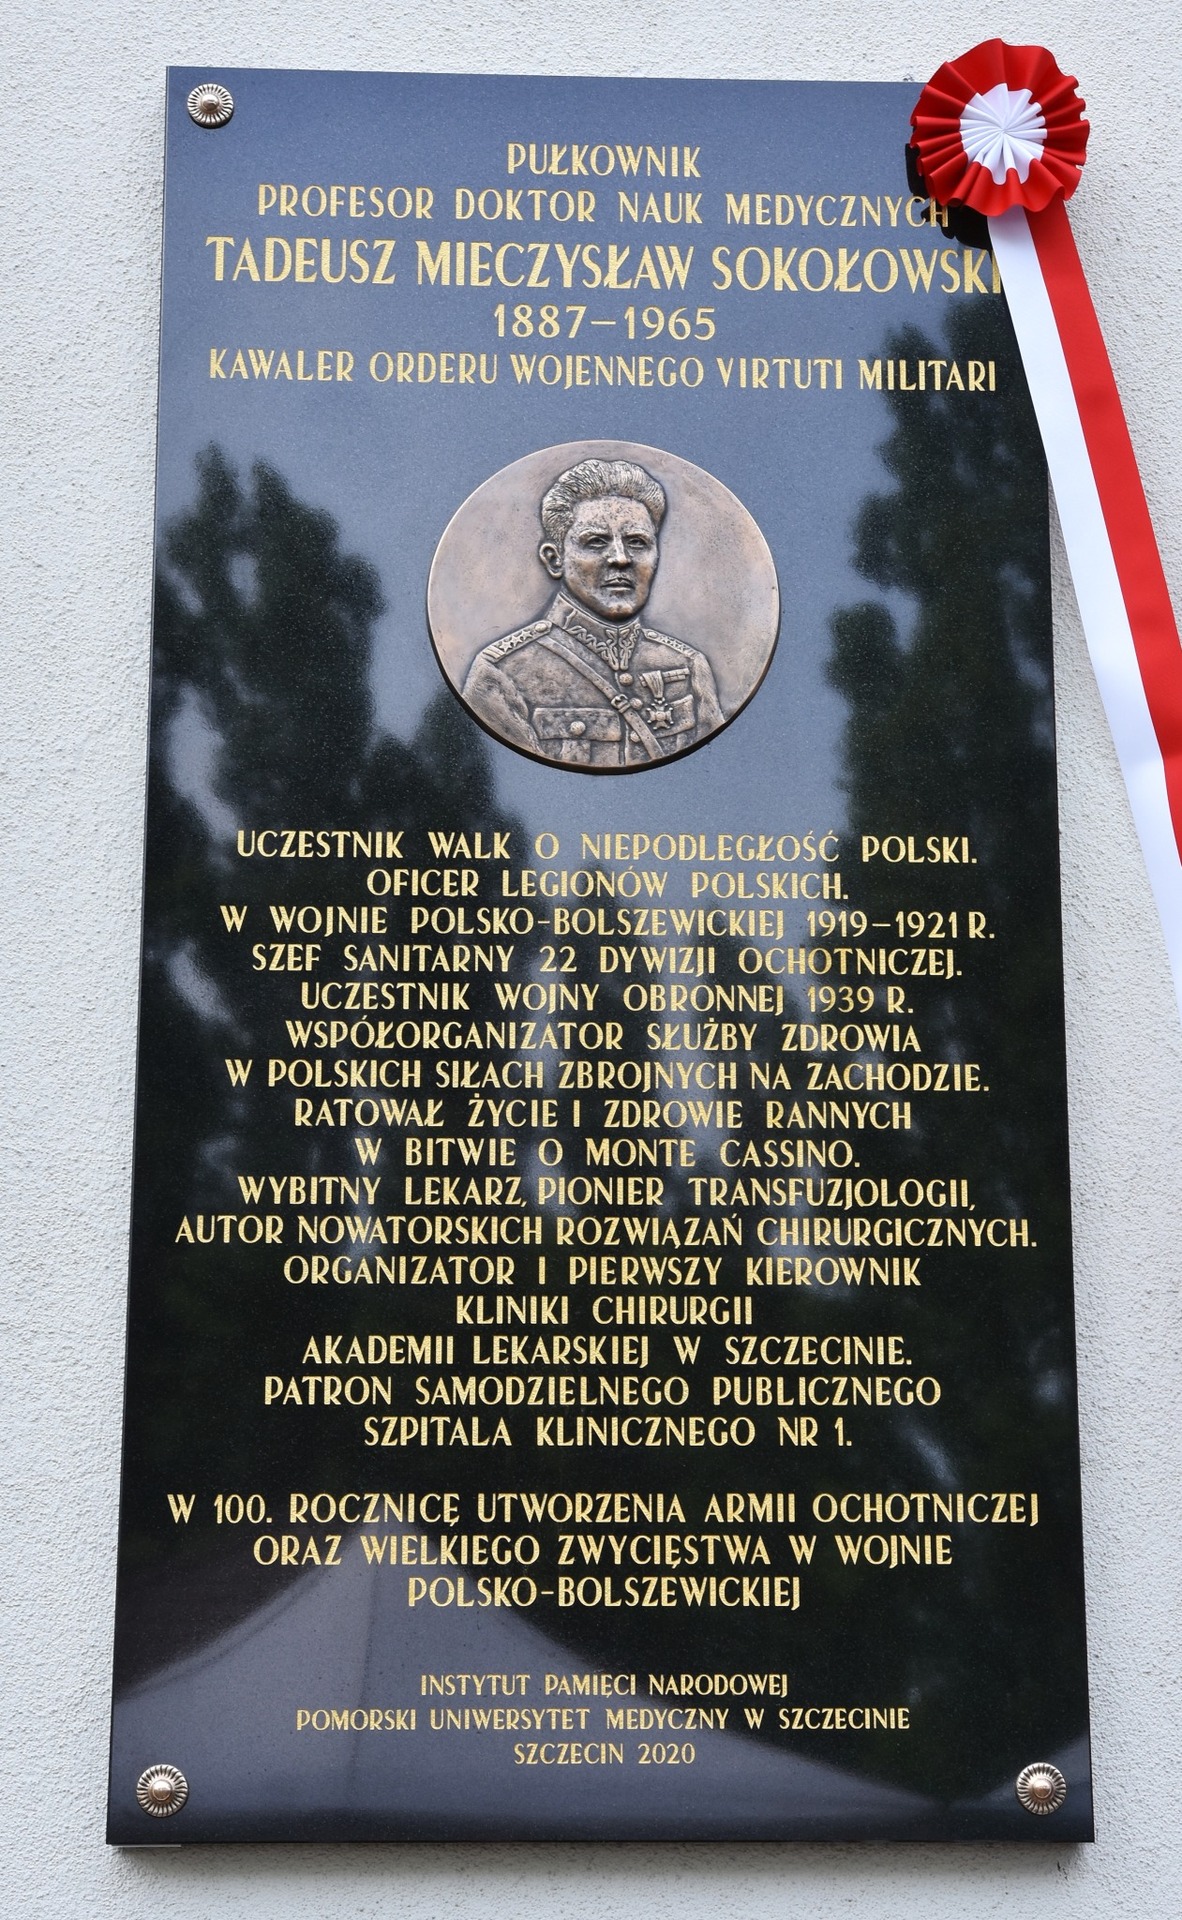 Tablica upamiętniająca Płk. prof. Tadeusza Sokołowskiego na budynku SSPSK nr 1 w Szczecinie